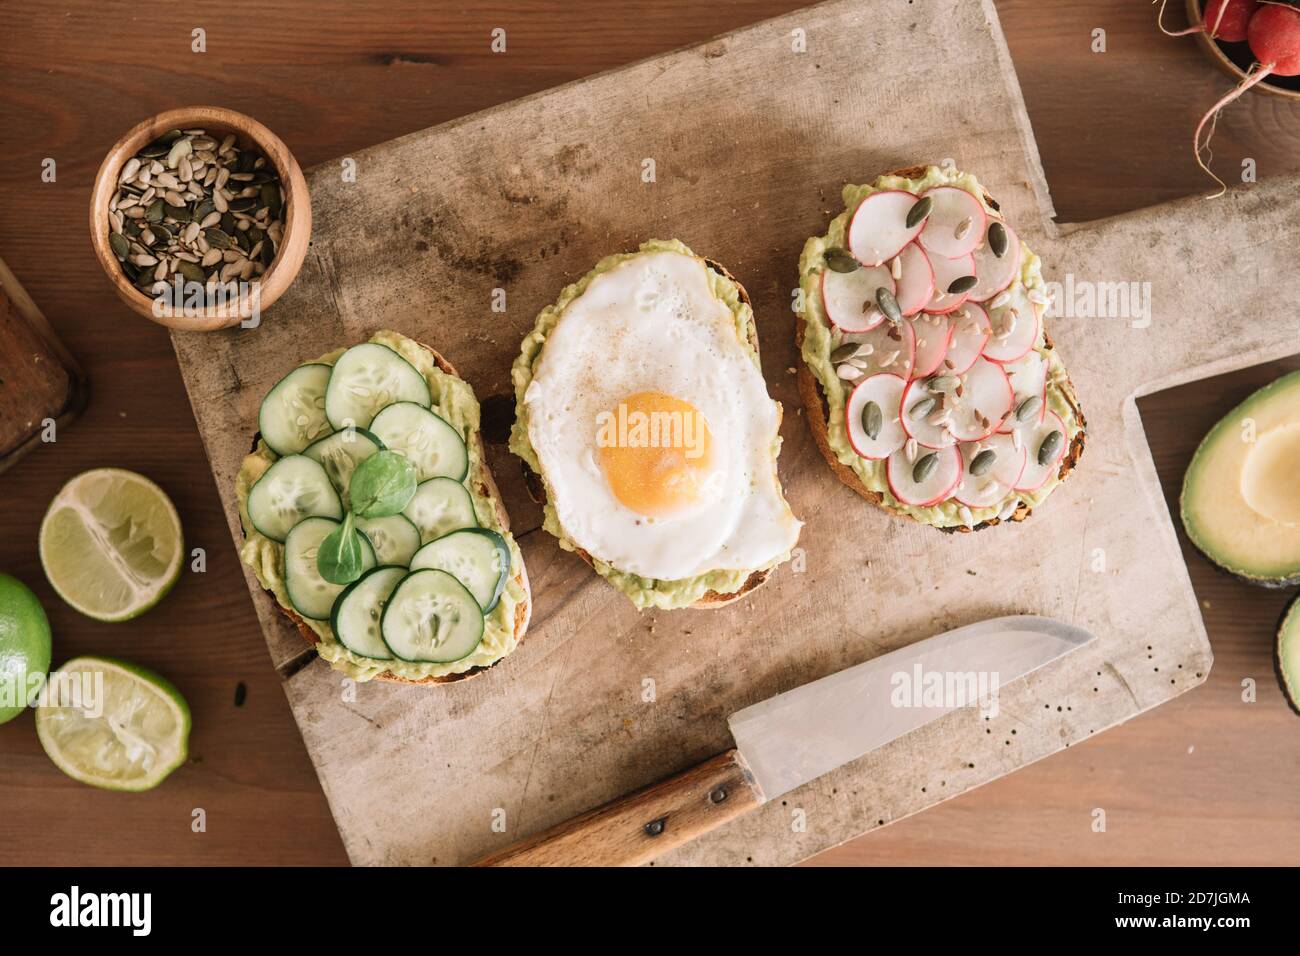 Fetta di cibo guarnito con verdure fresche e guacamole su serve piatti in cucina Foto Stock